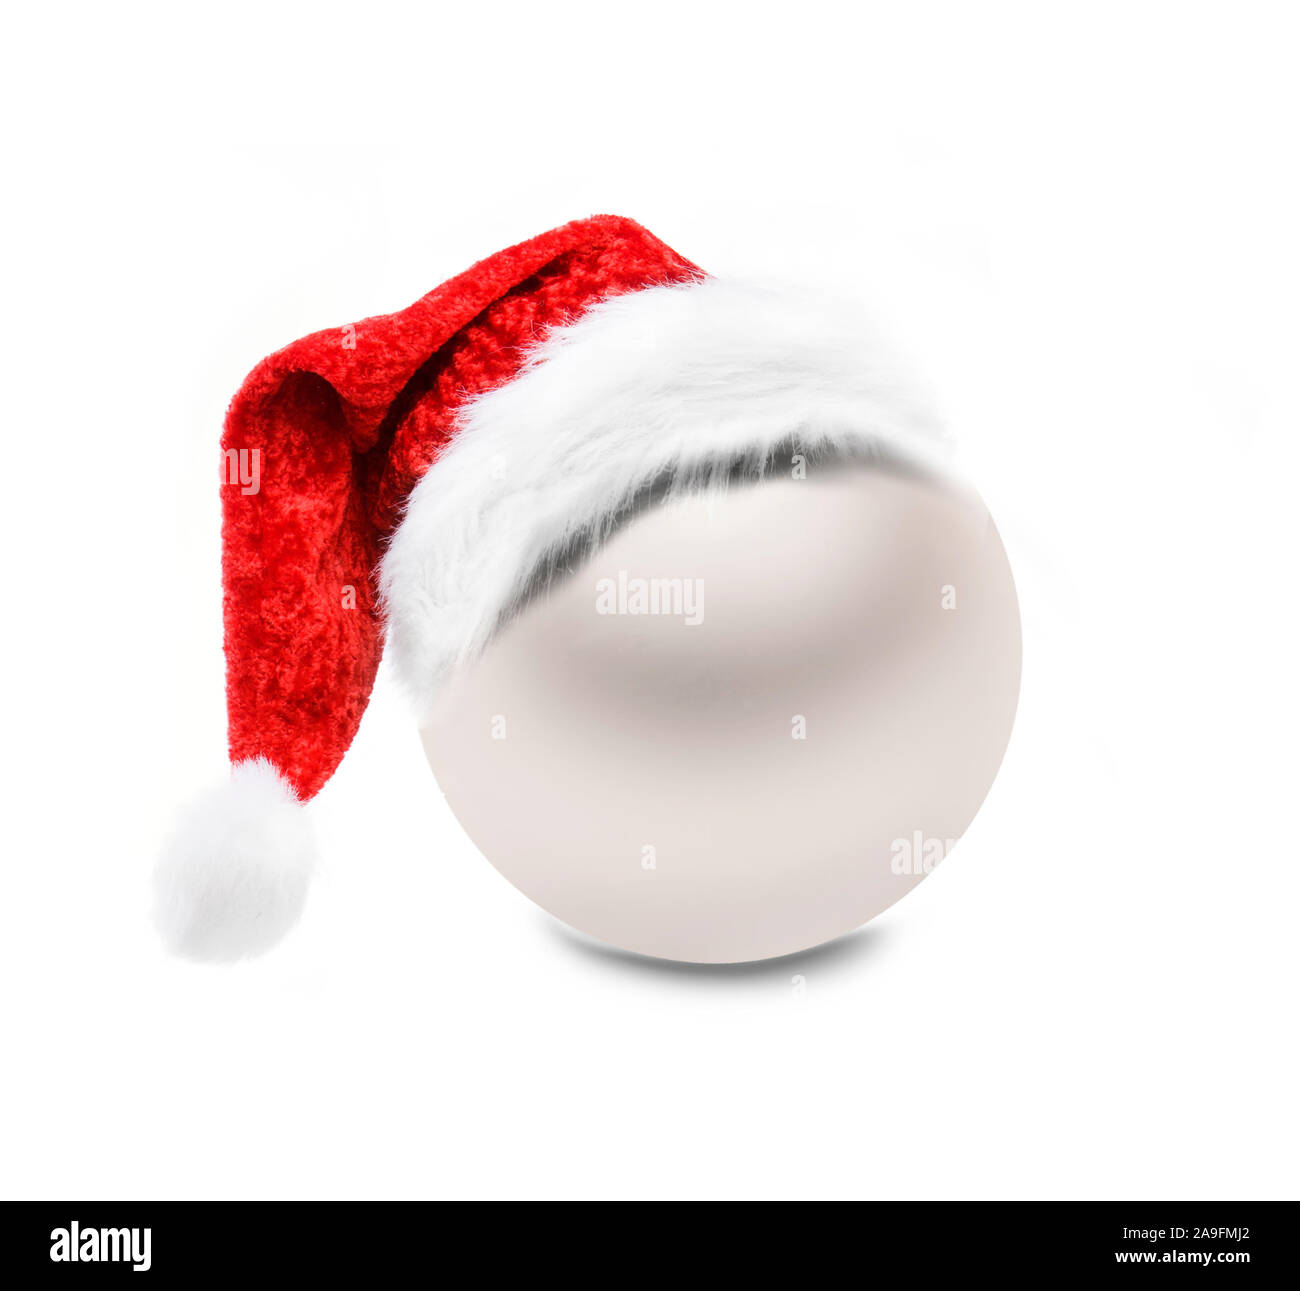 Bianco - golden palla di Natale isolato su sfondo bianco Foto Stock